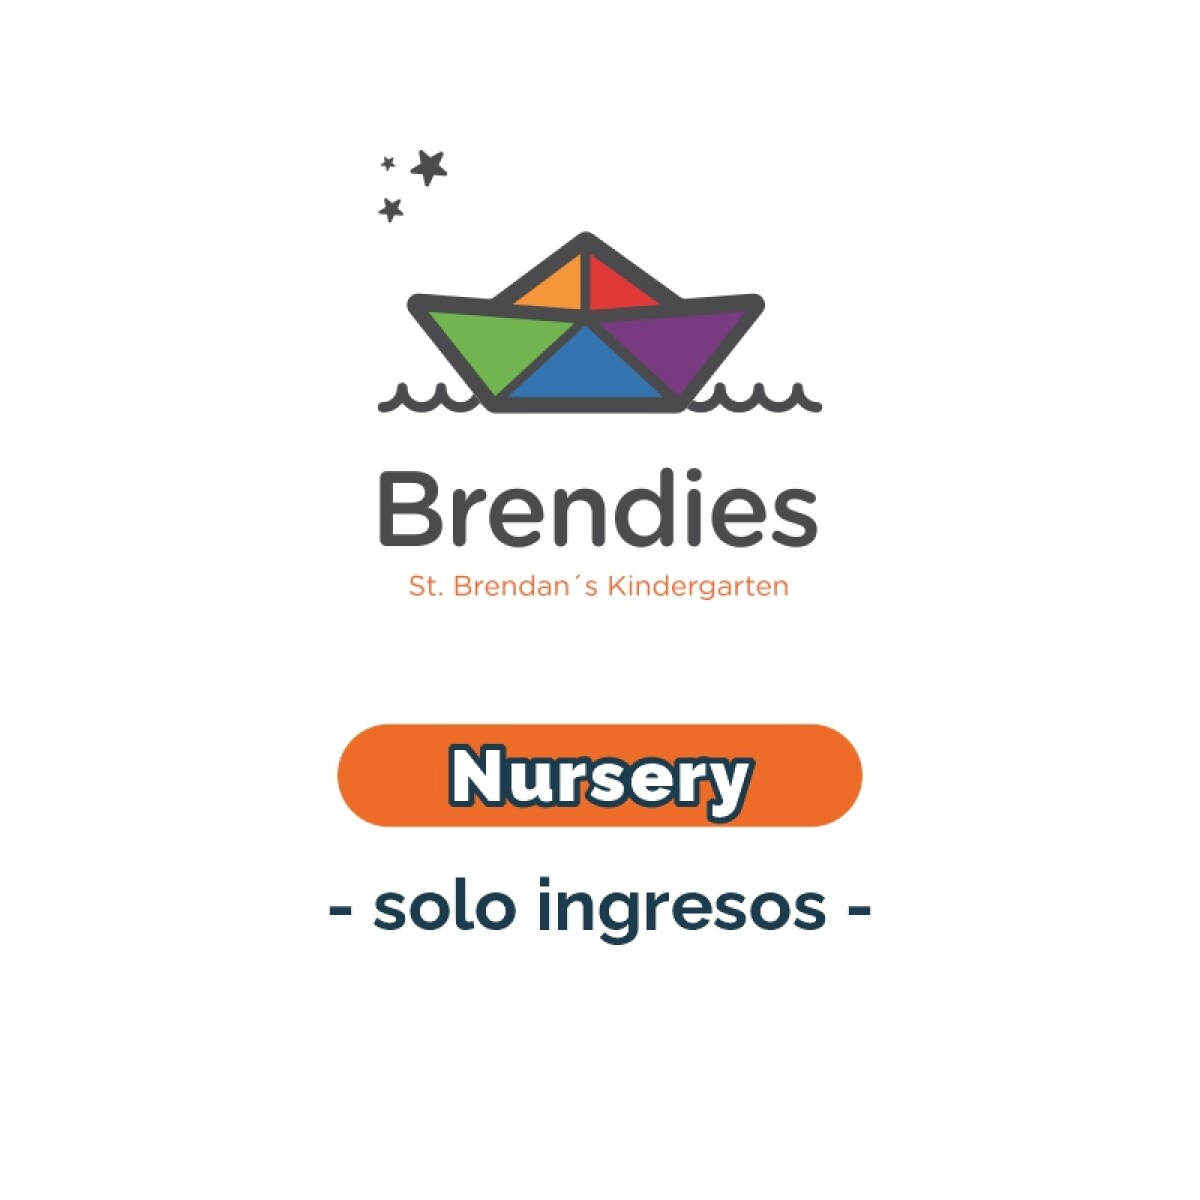 Lista de materiales - Brendies Nursery solo ingresos SB 